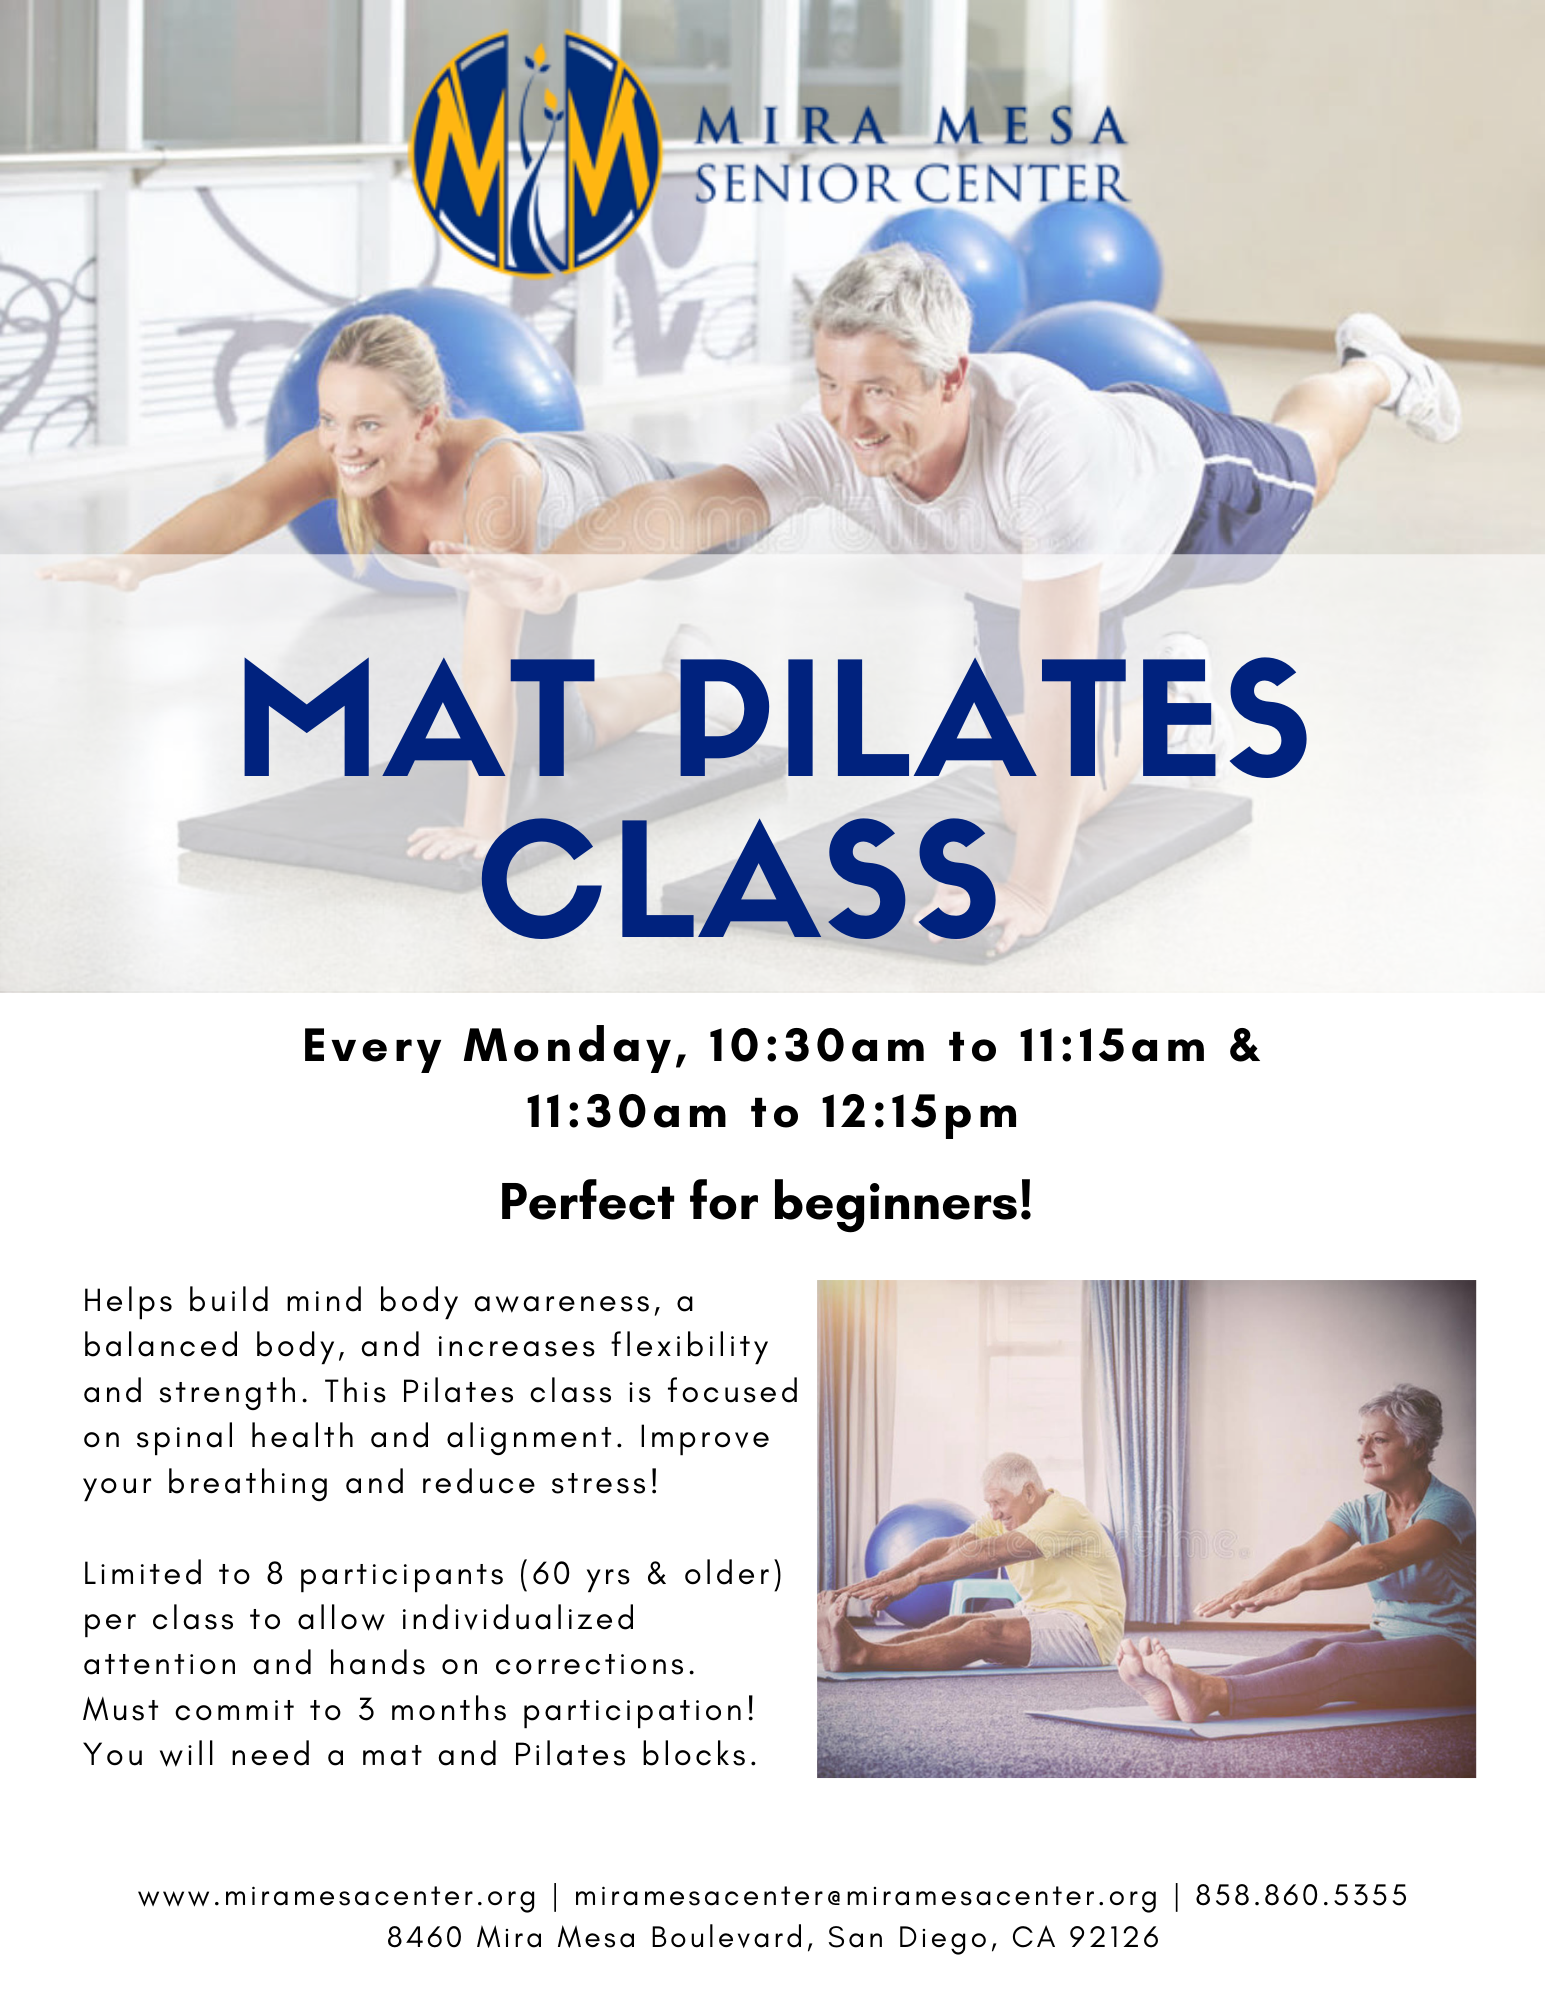 Mat Pilates Class – Pilot Program